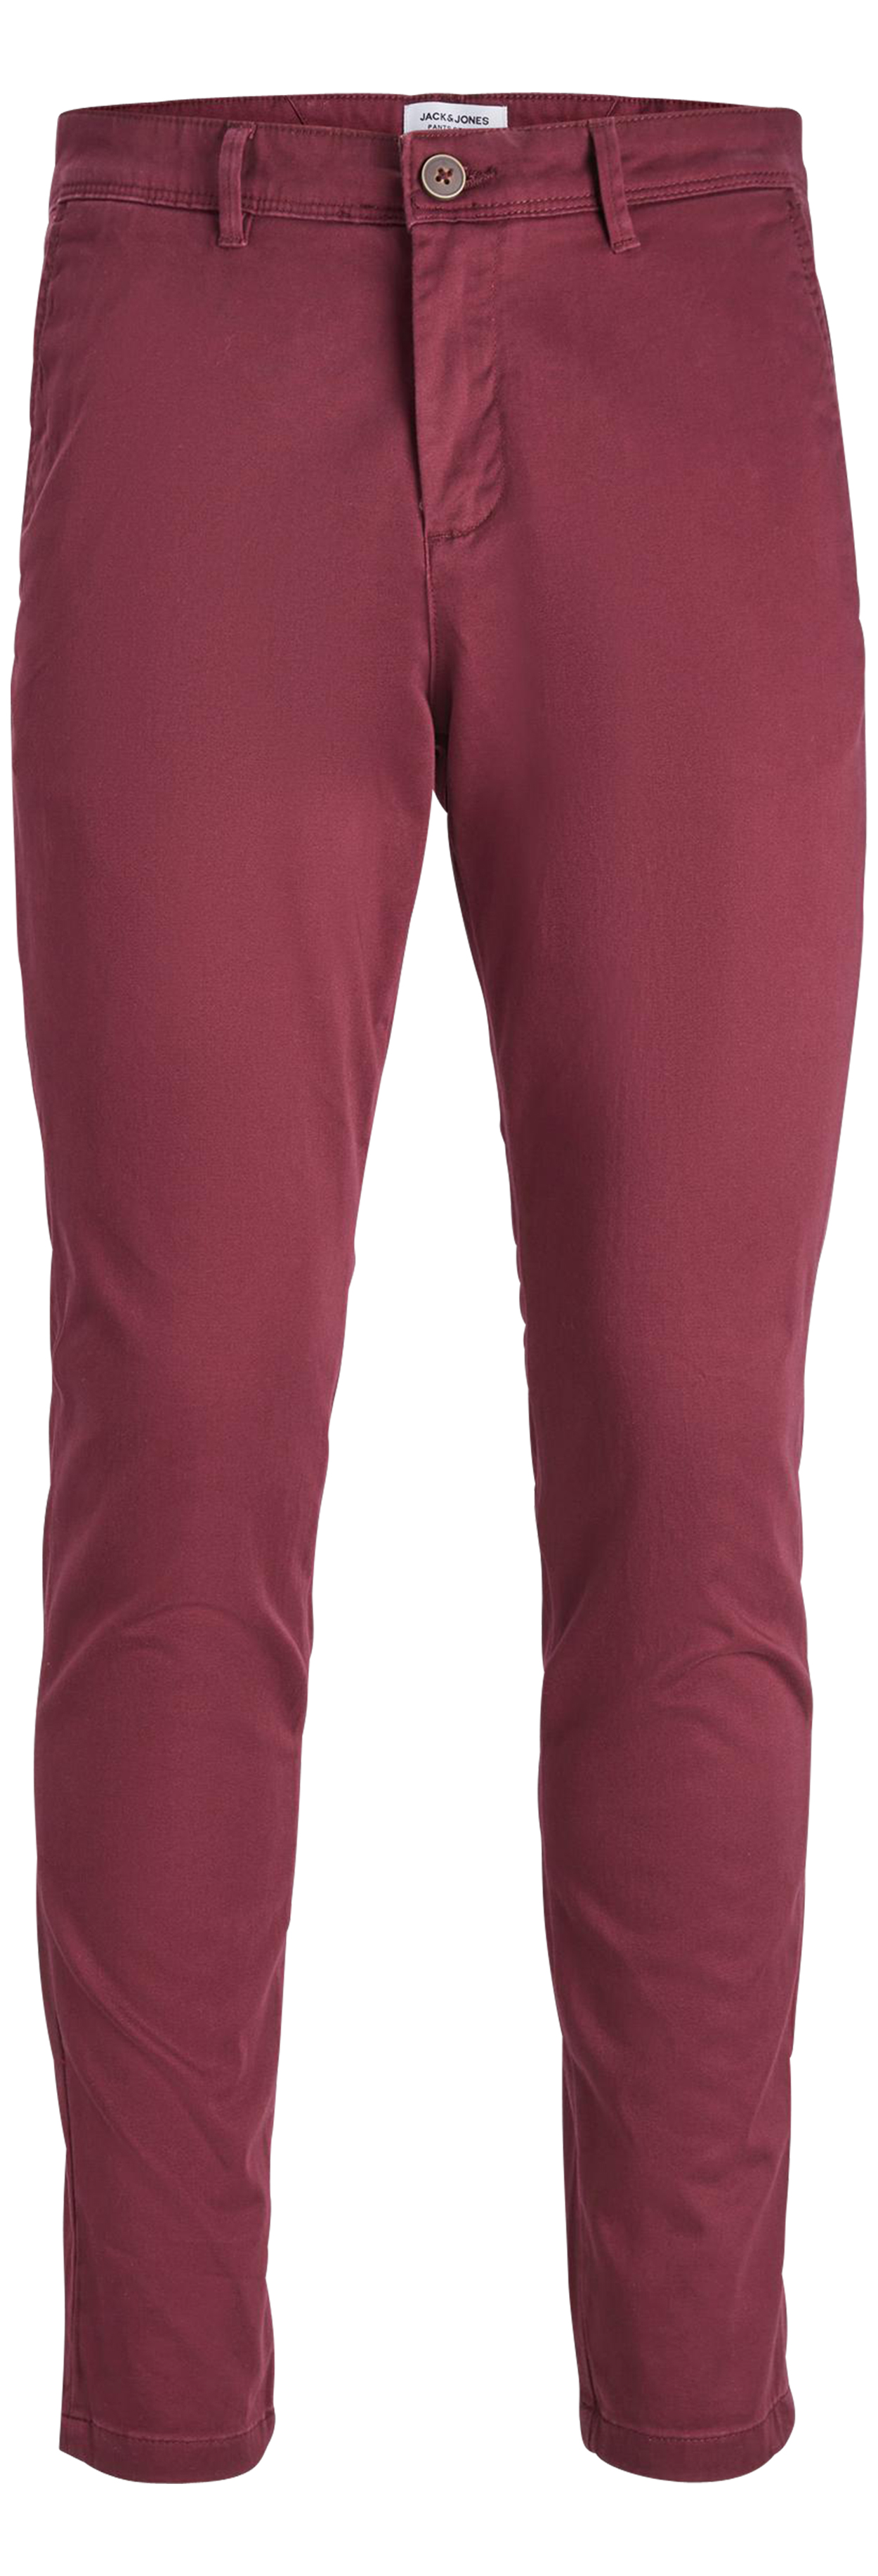 Pantalon Premium Marco Bowie en coton bordeaux